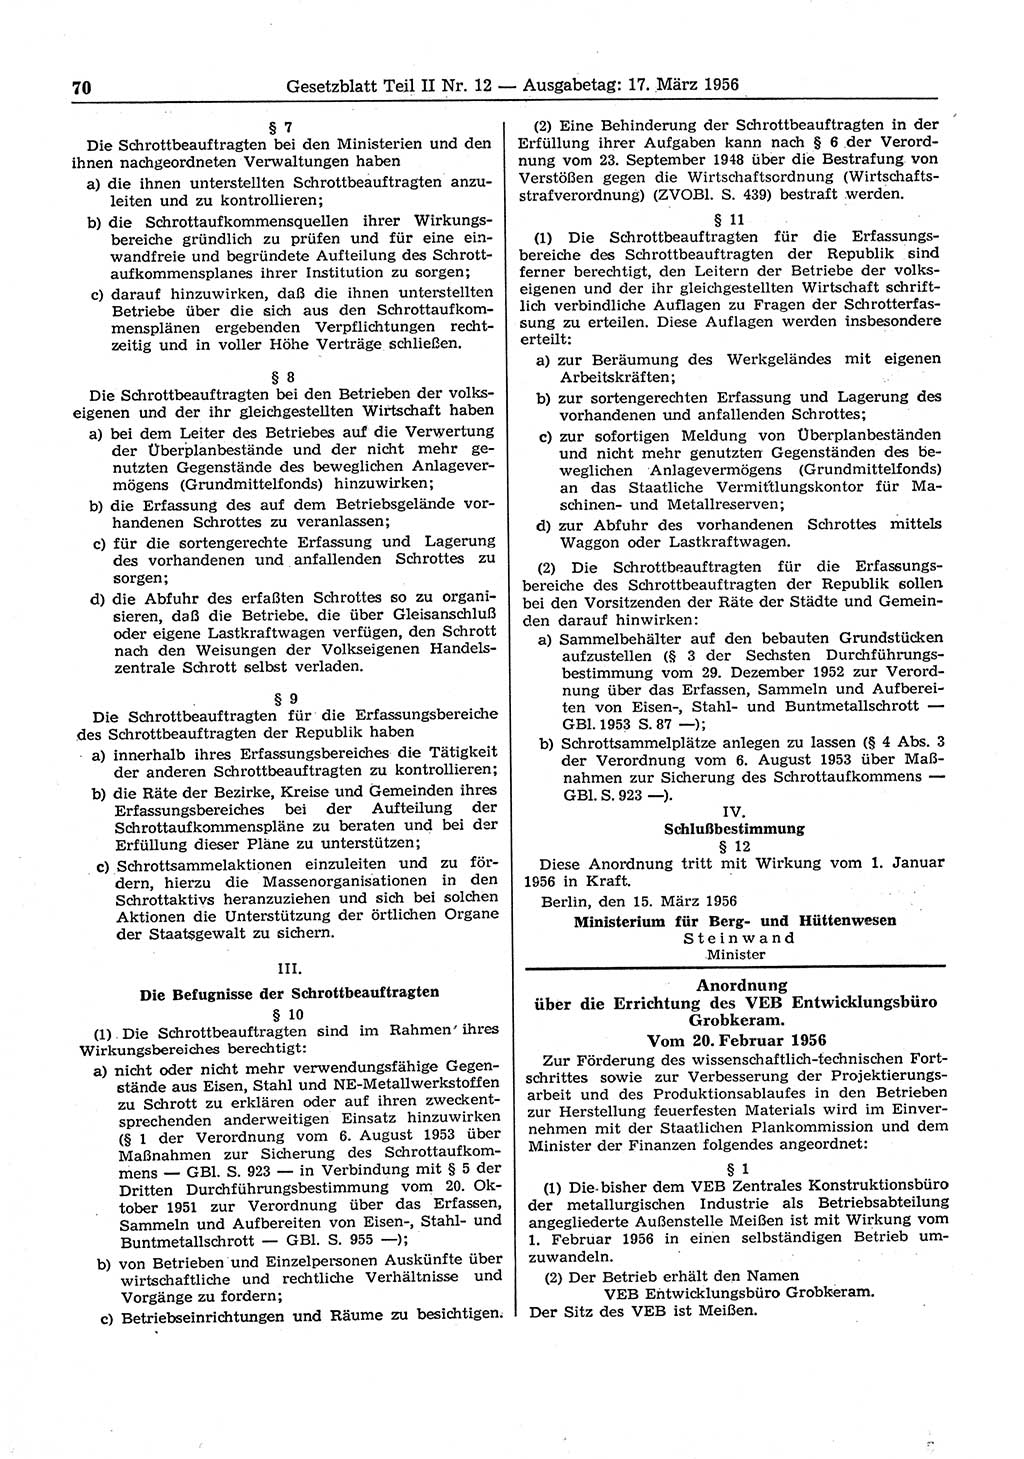 Gesetzblatt (GBl.) der Deutschen Demokratischen Republik (DDR) Teil ⅠⅠ 1956, Seite 70 (GBl. DDR ⅠⅠ 1956, S. 70)